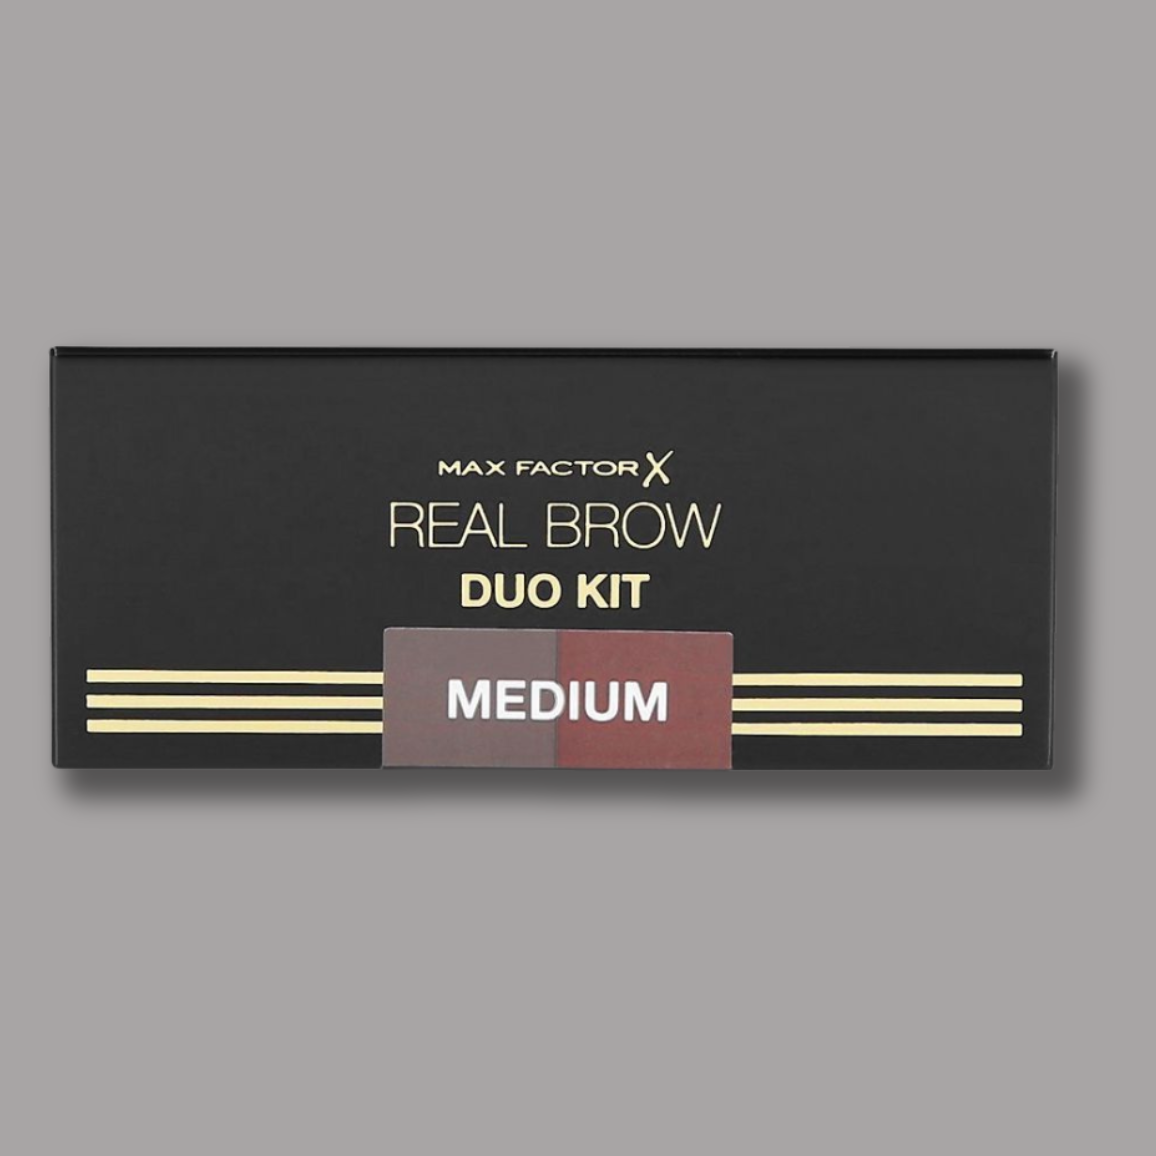 6 x Max Factor Real Brow Duo Kit - 002 MEDIUM